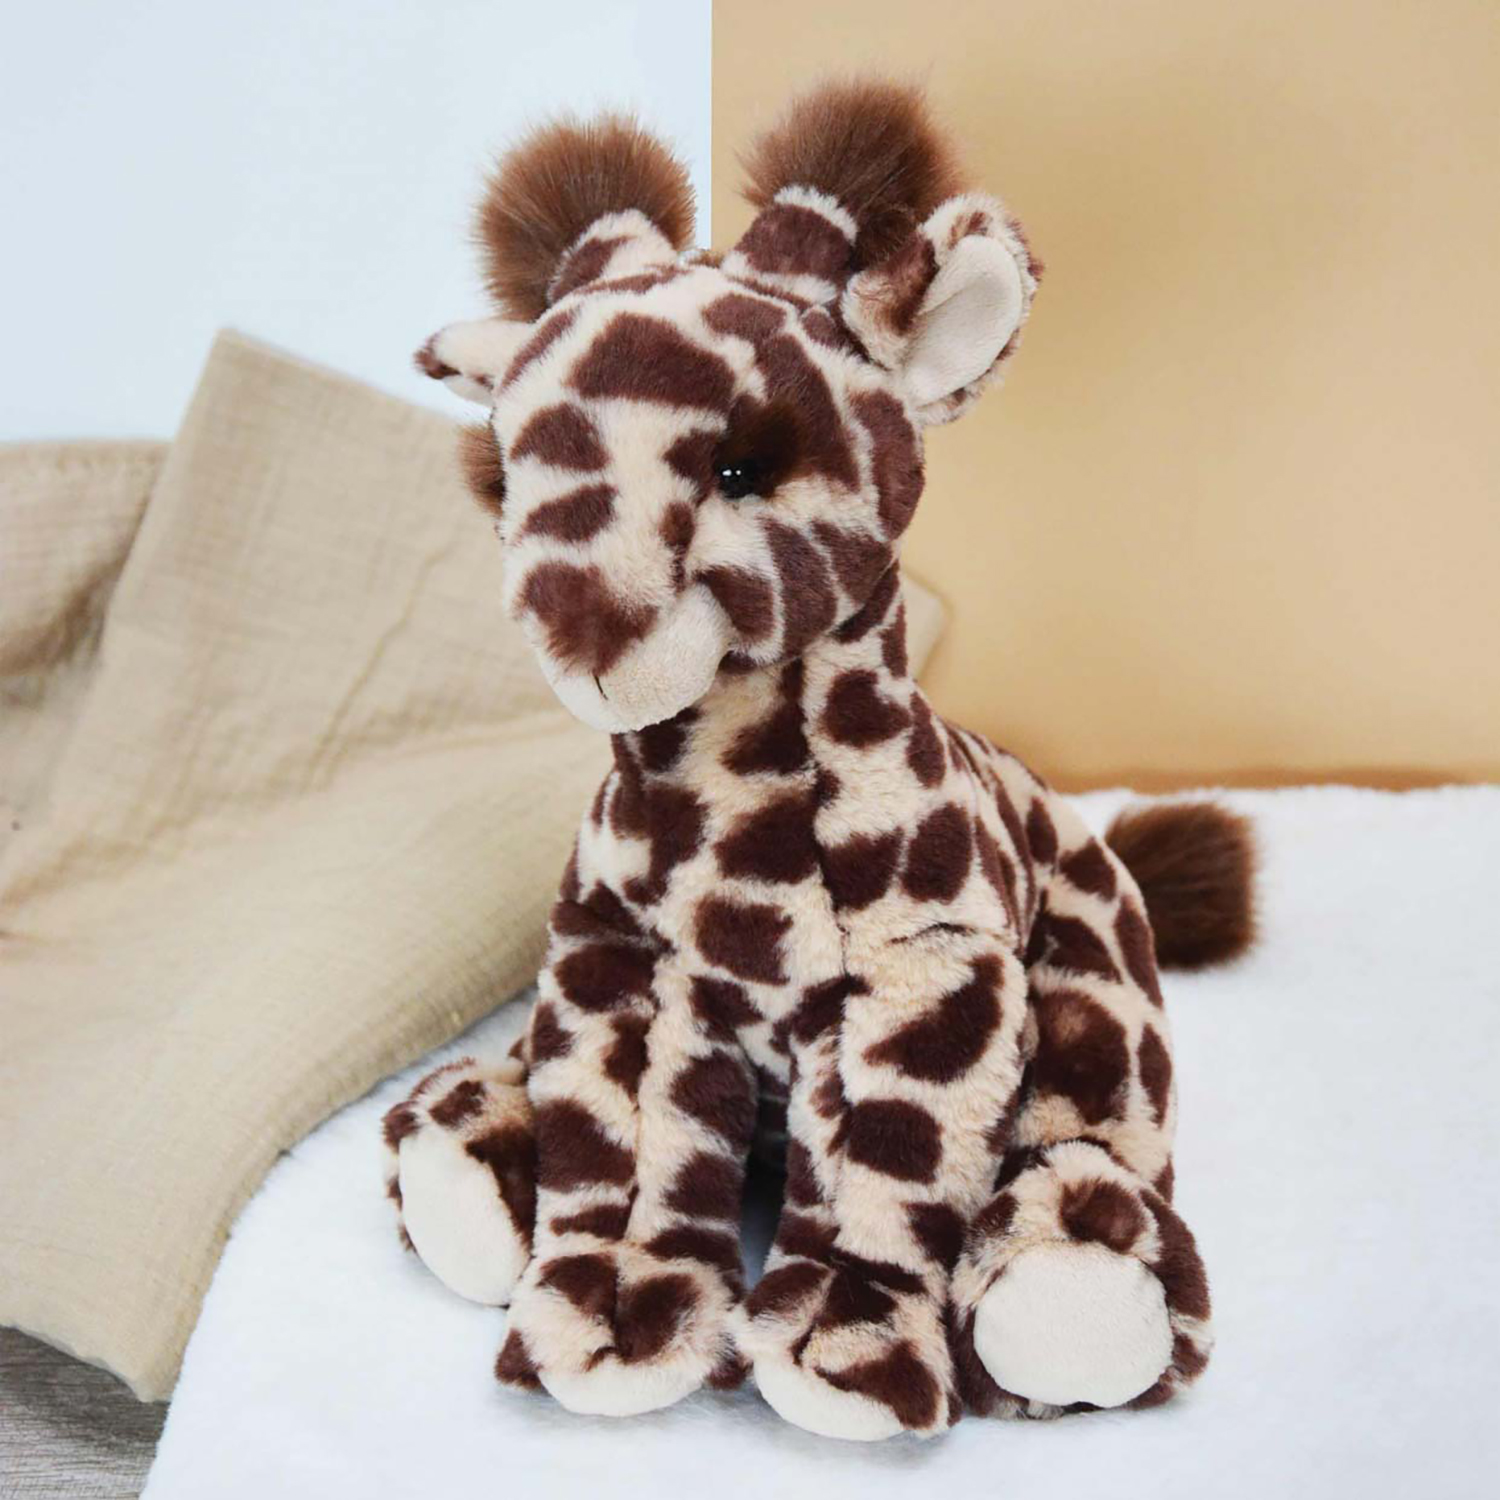 Girafe en peluche géante - 100 cm - Titours France - Livraison gratuite